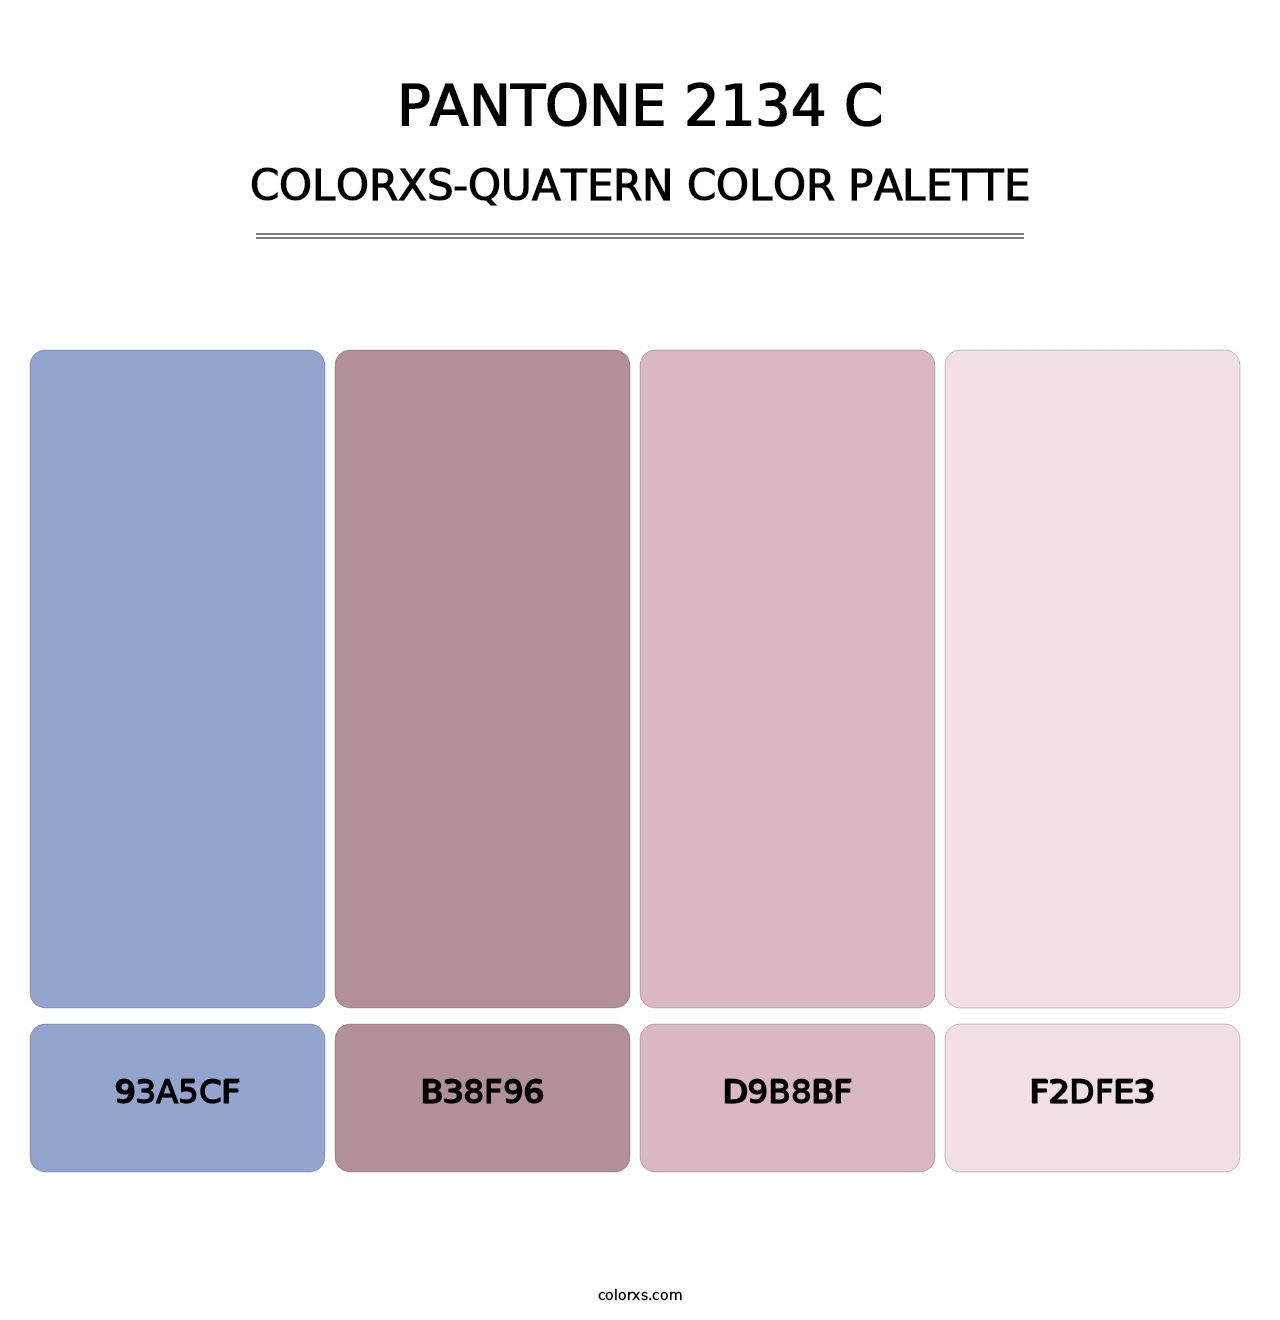 PANTONE 2134 C - Colorxs Quatern Palette